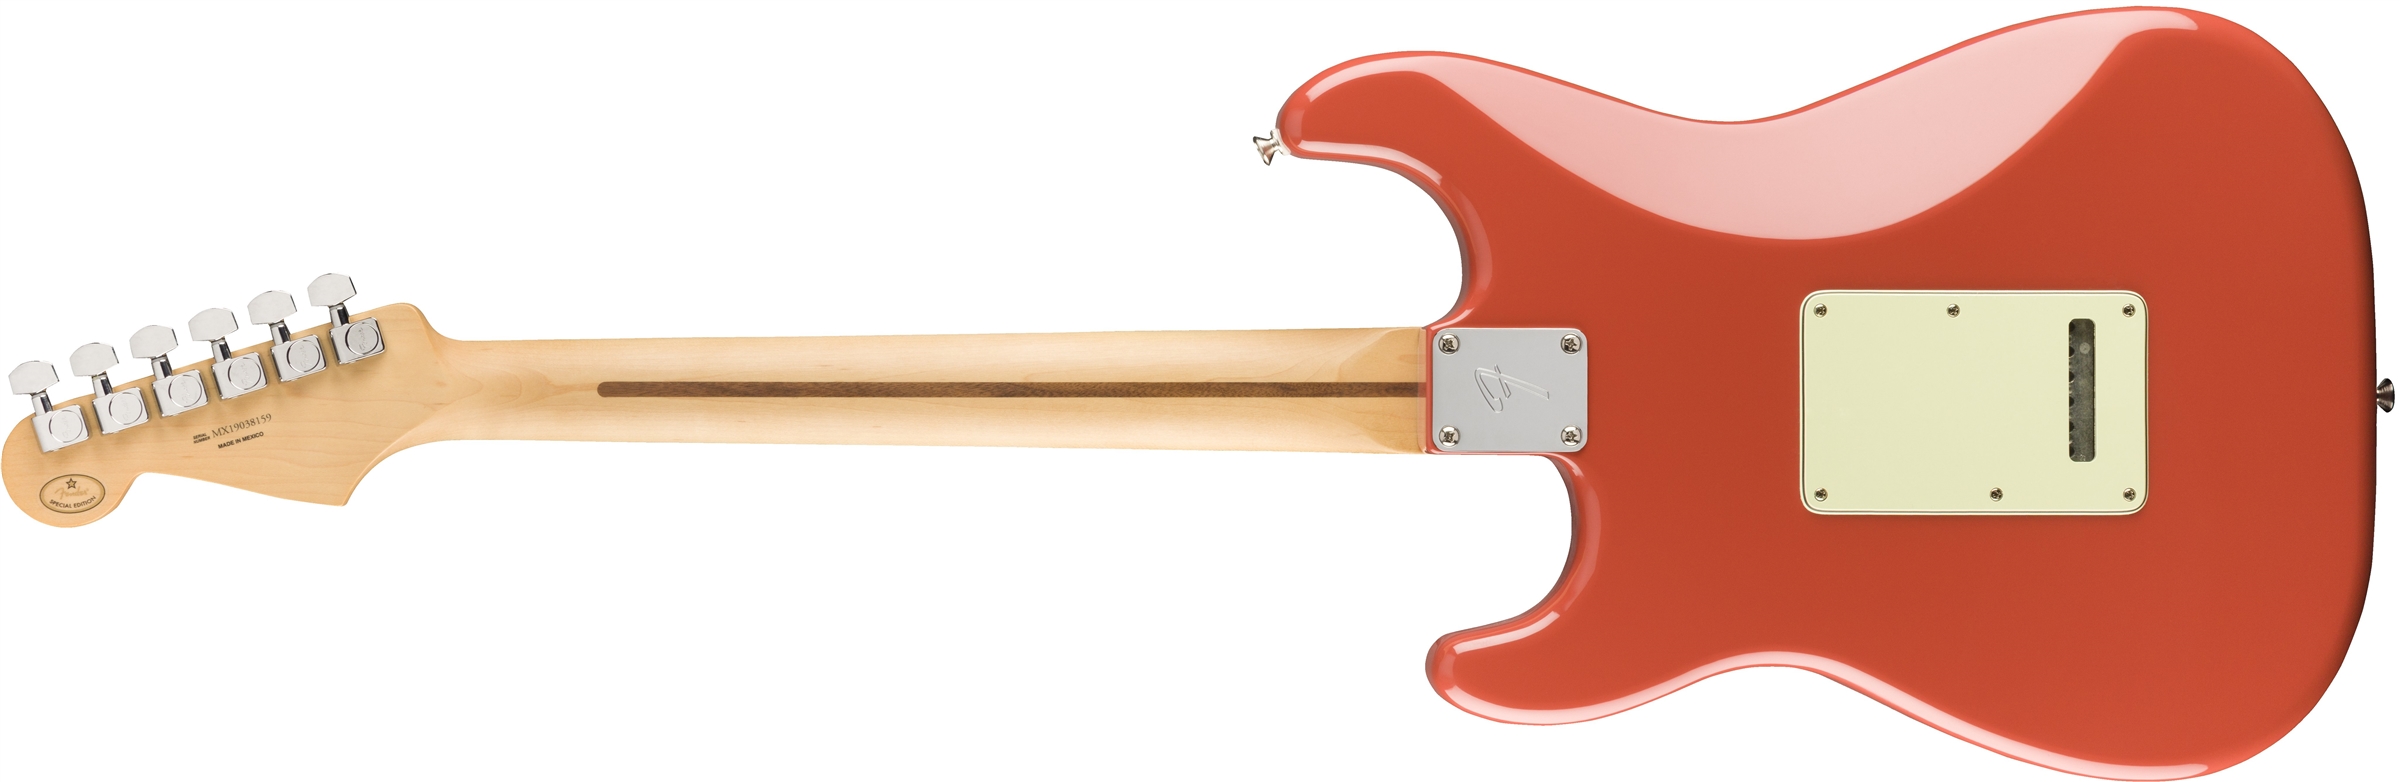 Fender Strat Player Ltd Mex 3s Trem Pf - Fiesta Red - Elektrische gitaar in Str-vorm - Variation 1